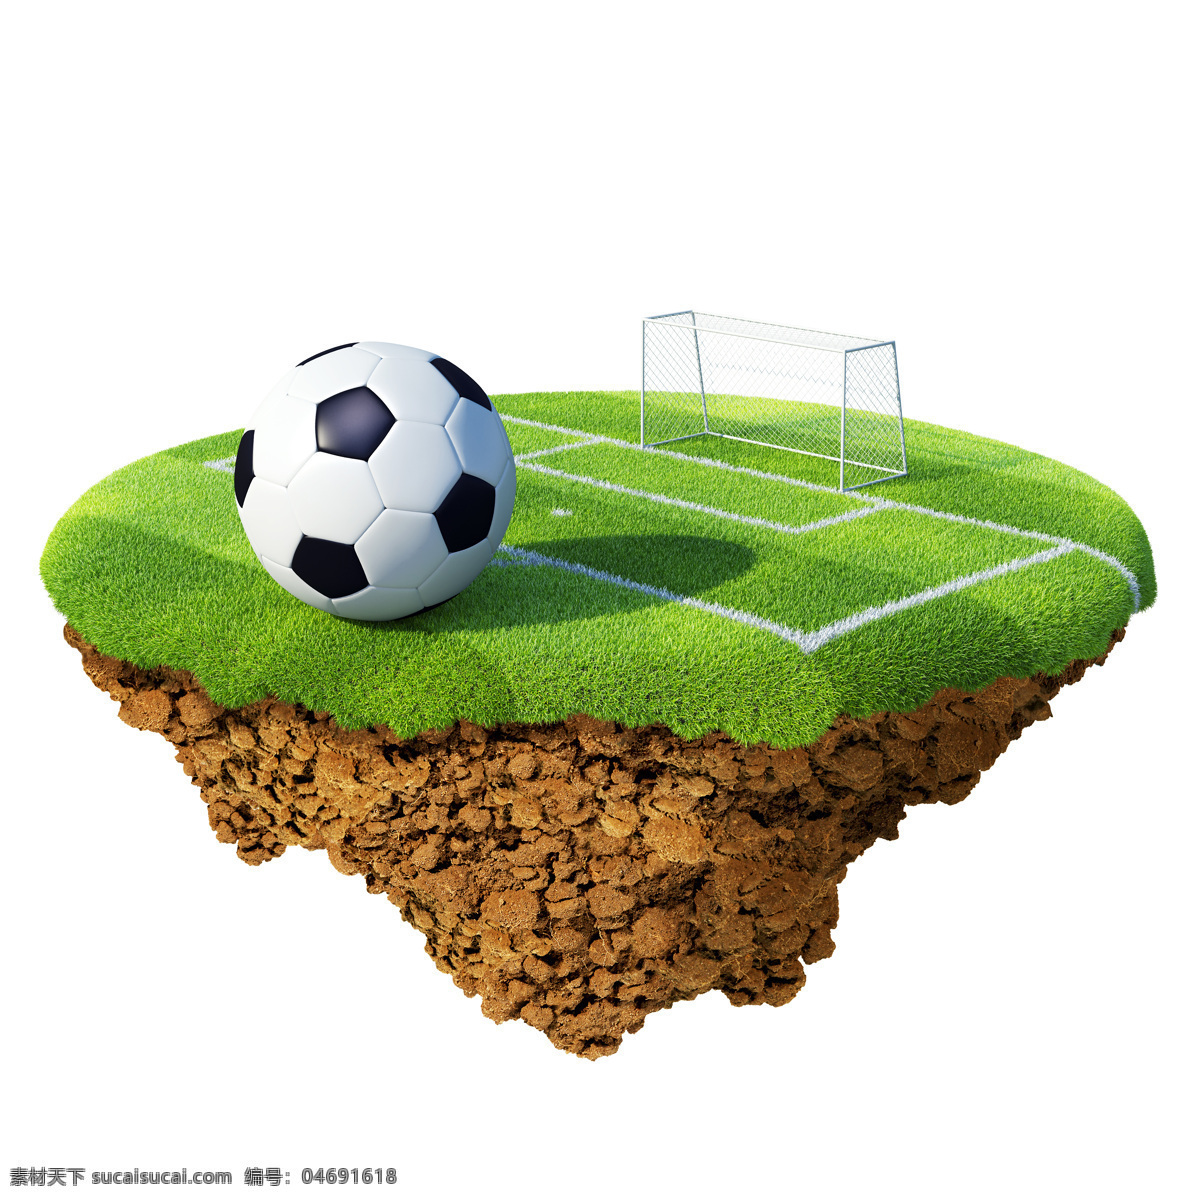 足球 运动 球门 球场 体育运动 球类运动 悬浮岛 生活百科